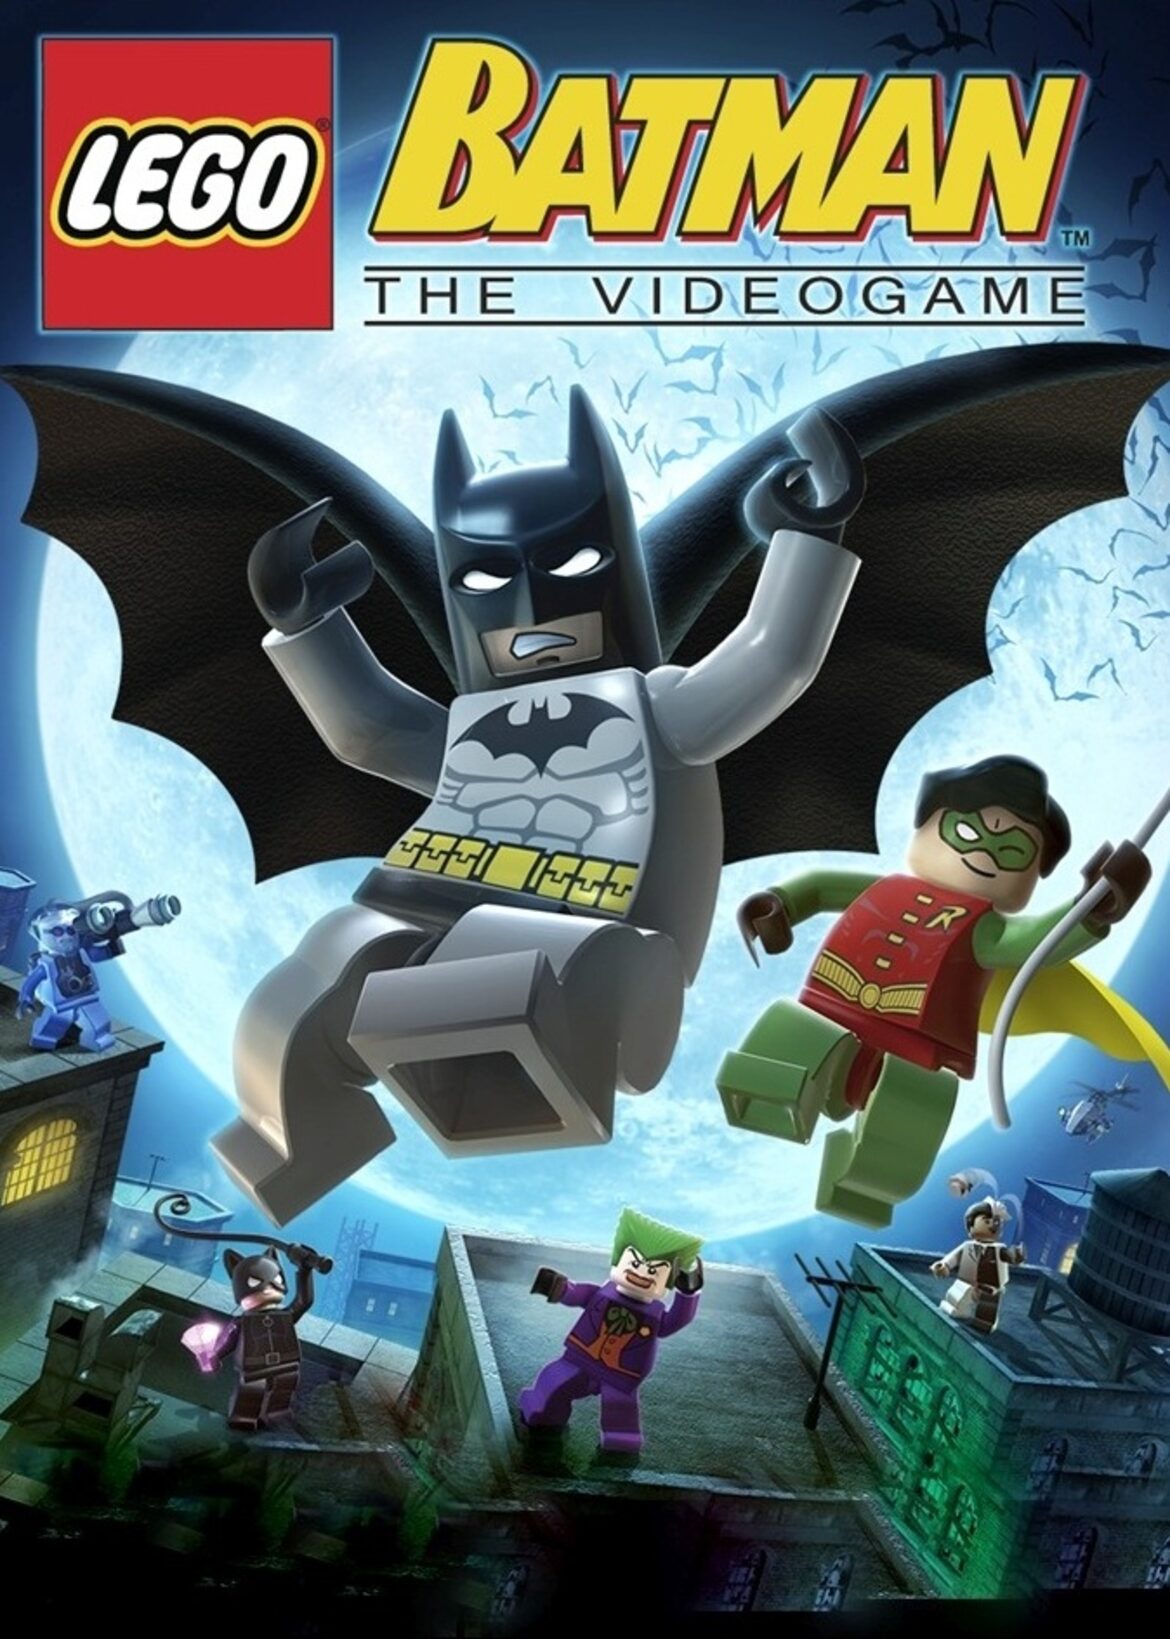 LEGO Batman: Videogame | P.M. Universe | Fandom